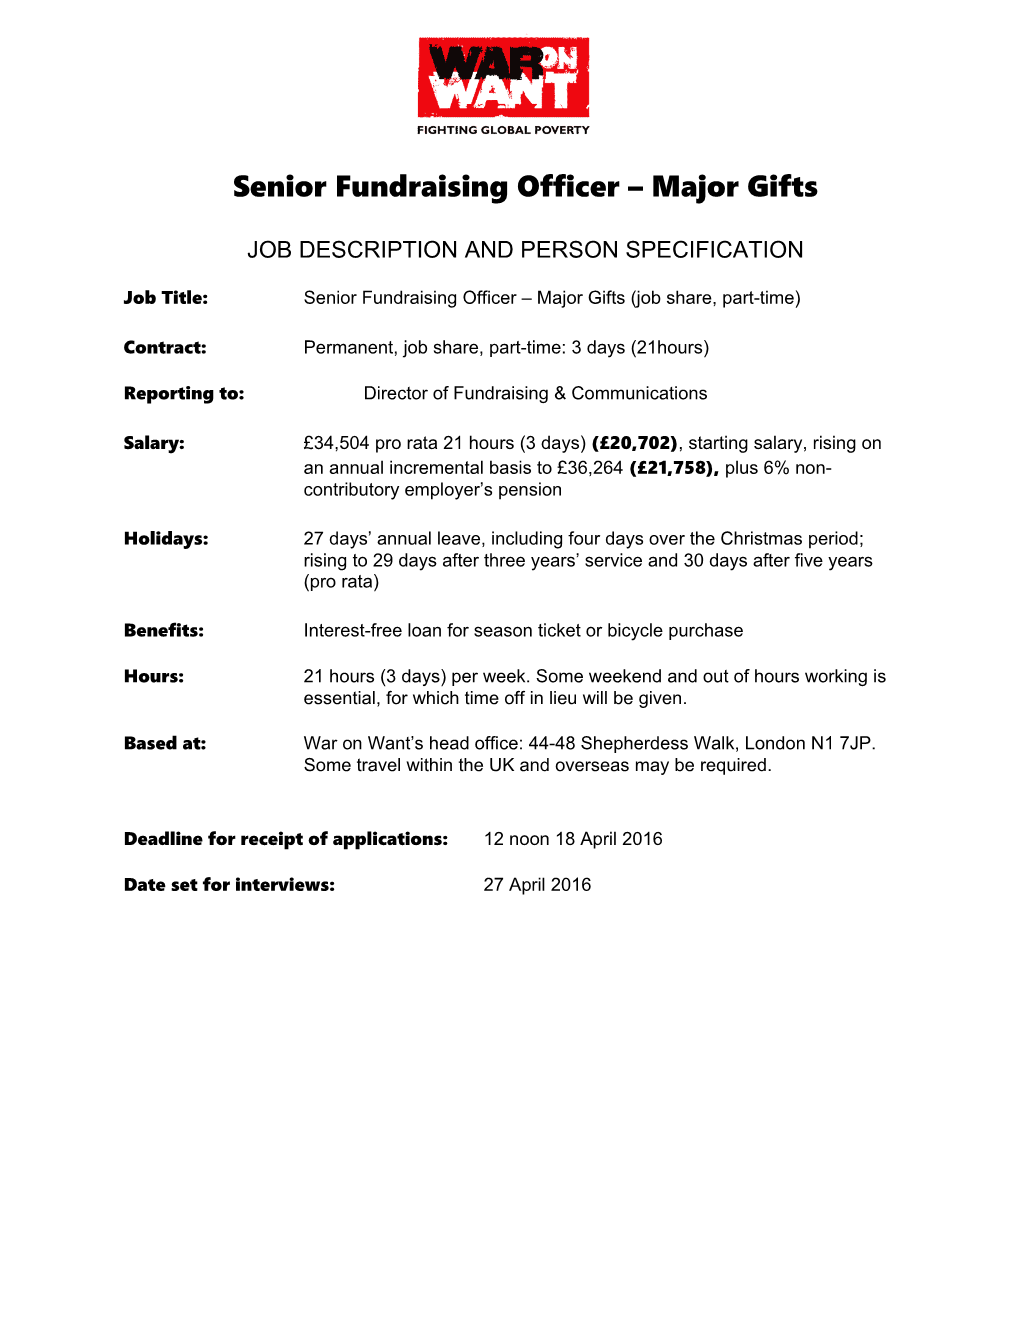 Senior Fundraising Officer Major Gifts